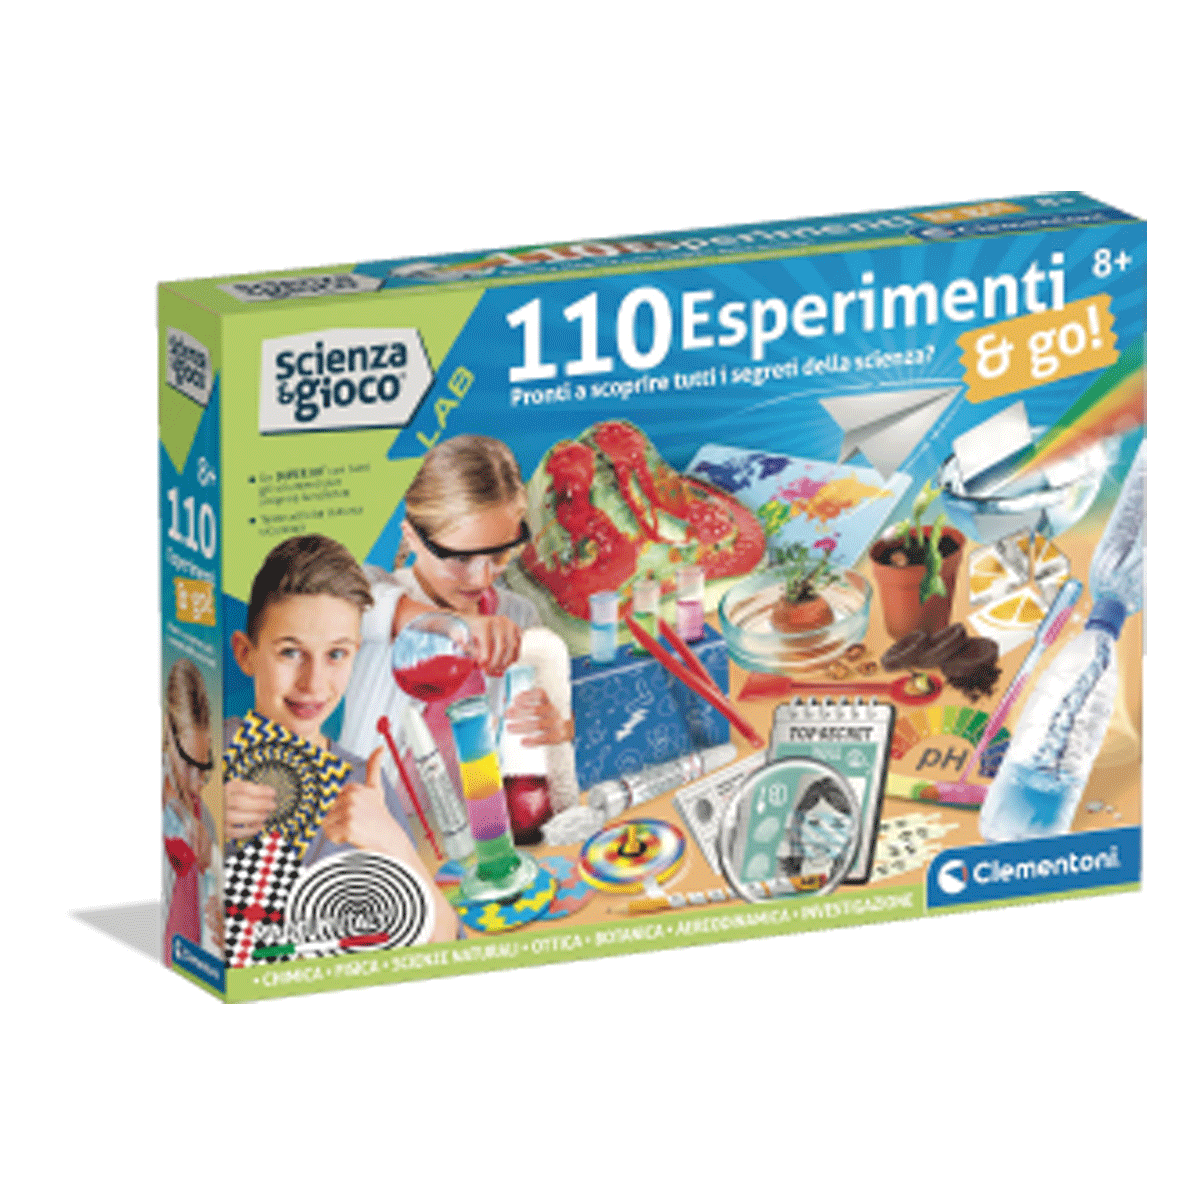 110 esperimenti & go! - CLEMENTONI